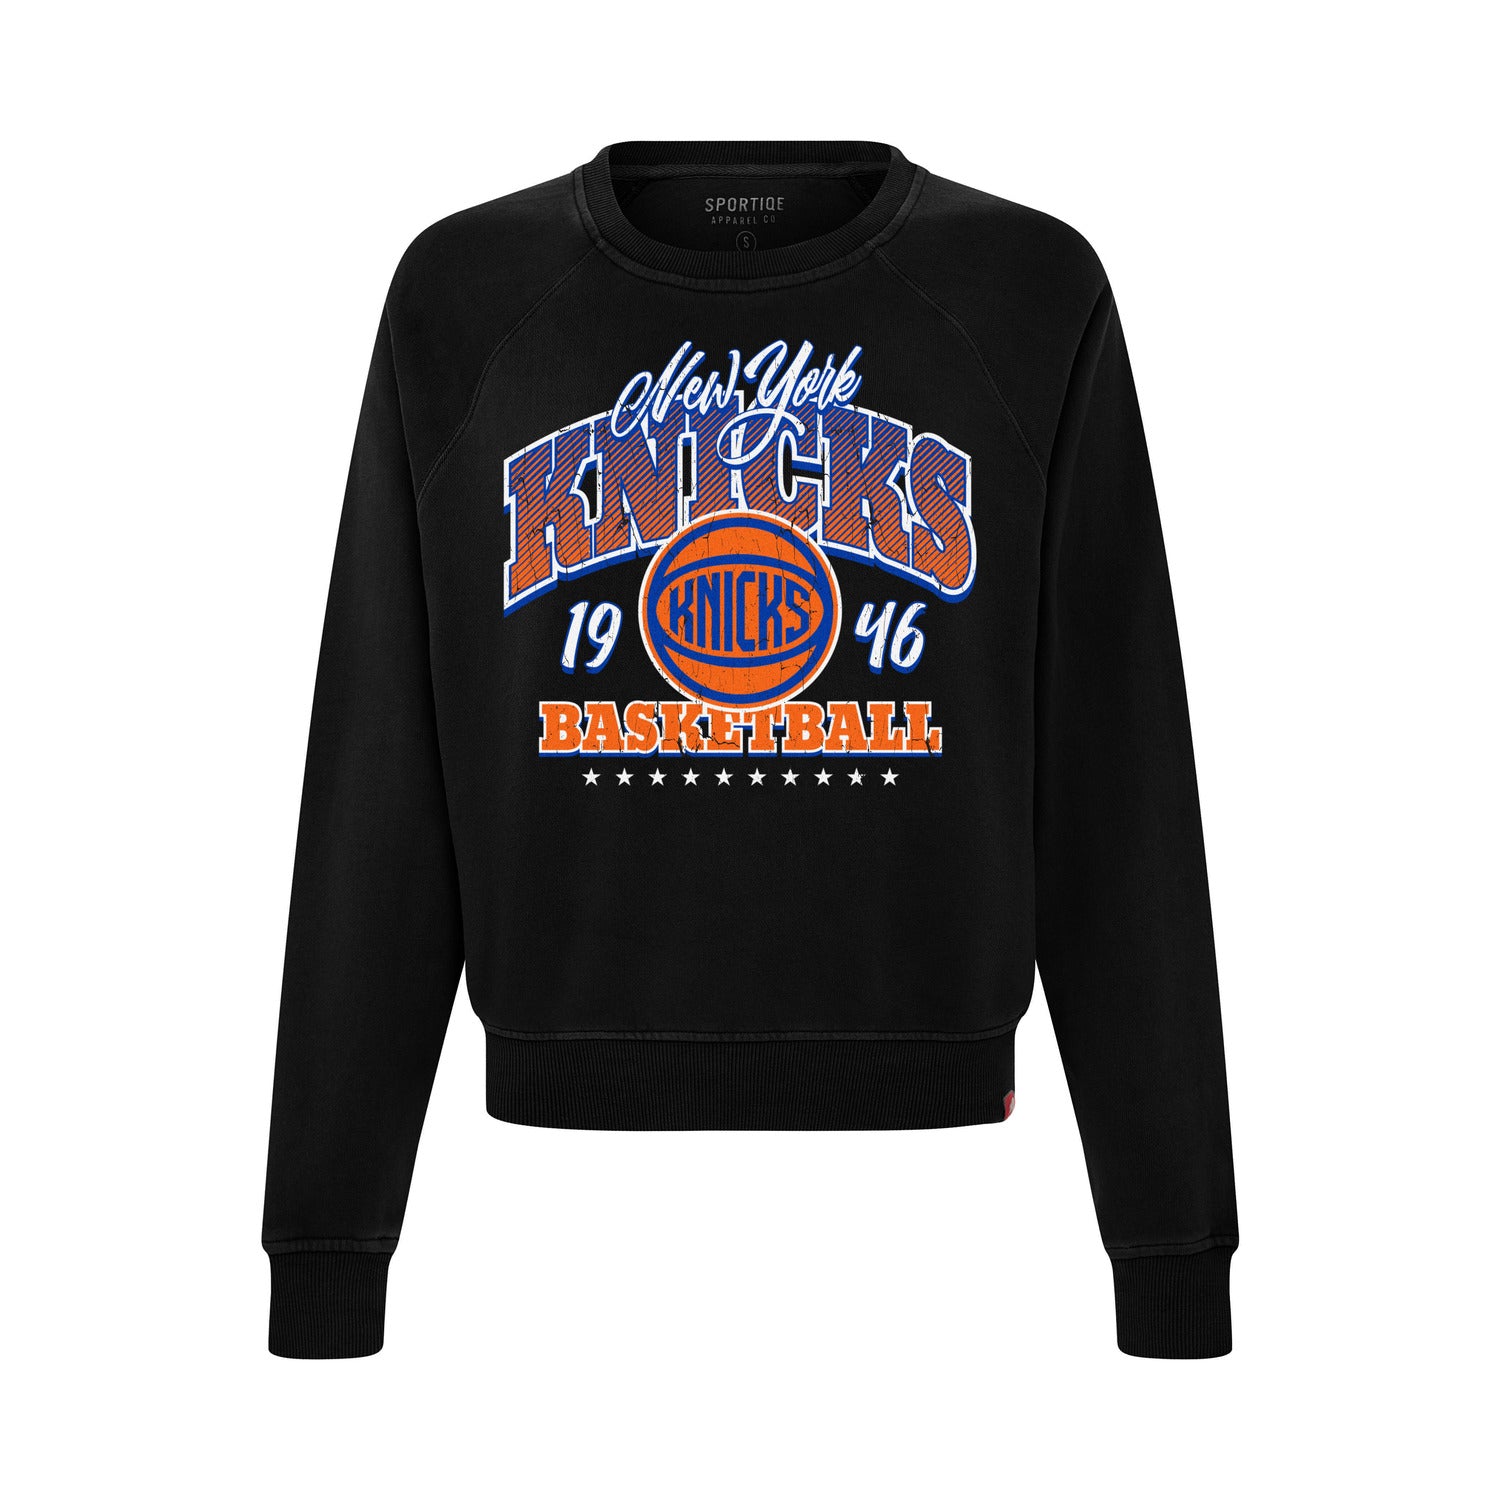  Knicks Women's Apparel Hoodie